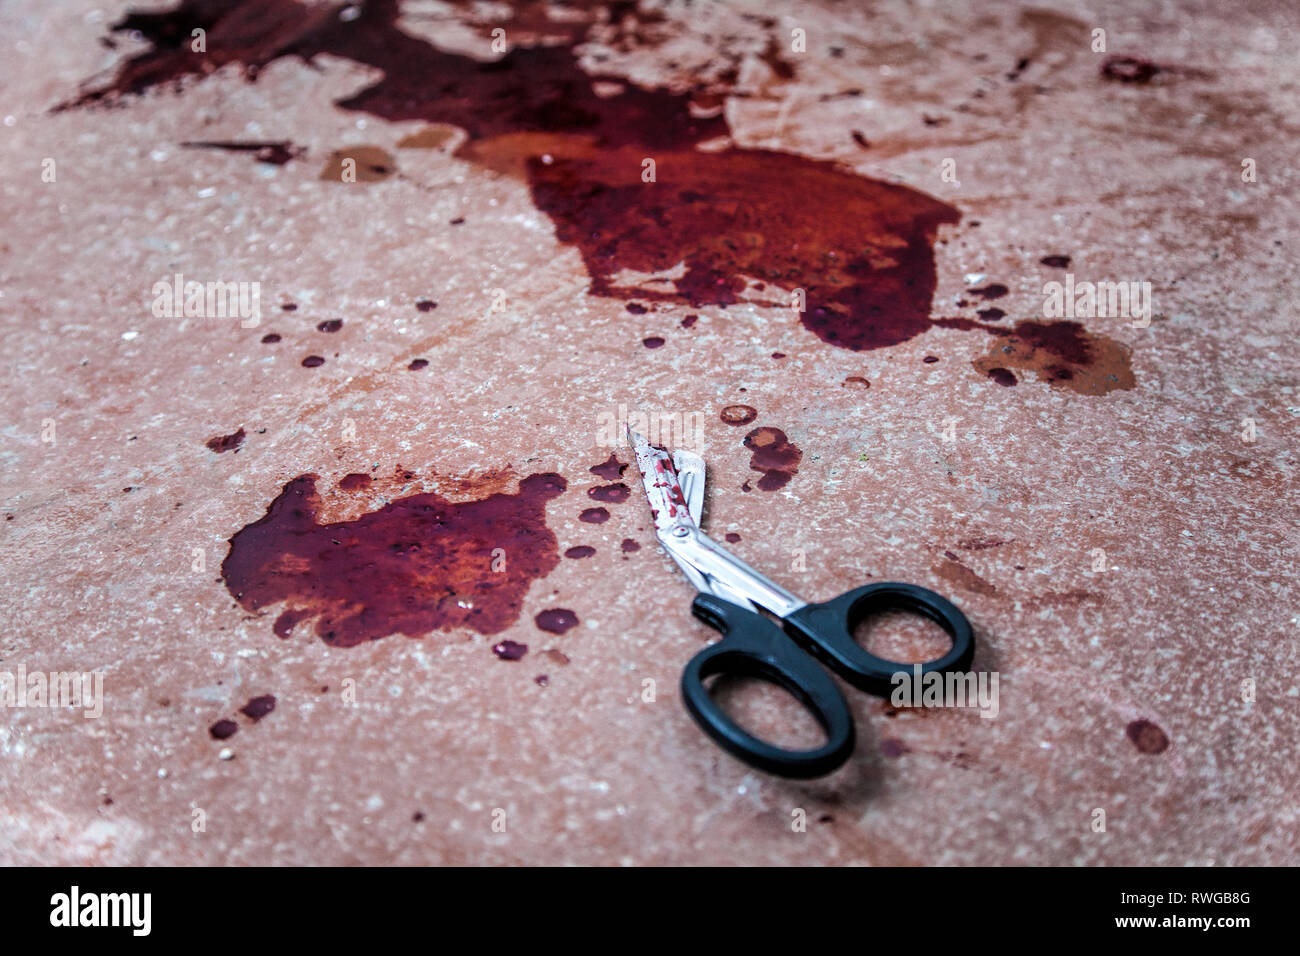 Trauma cesoie giacente sul piano con macchie di sangue umano intorno a. Foto Stock